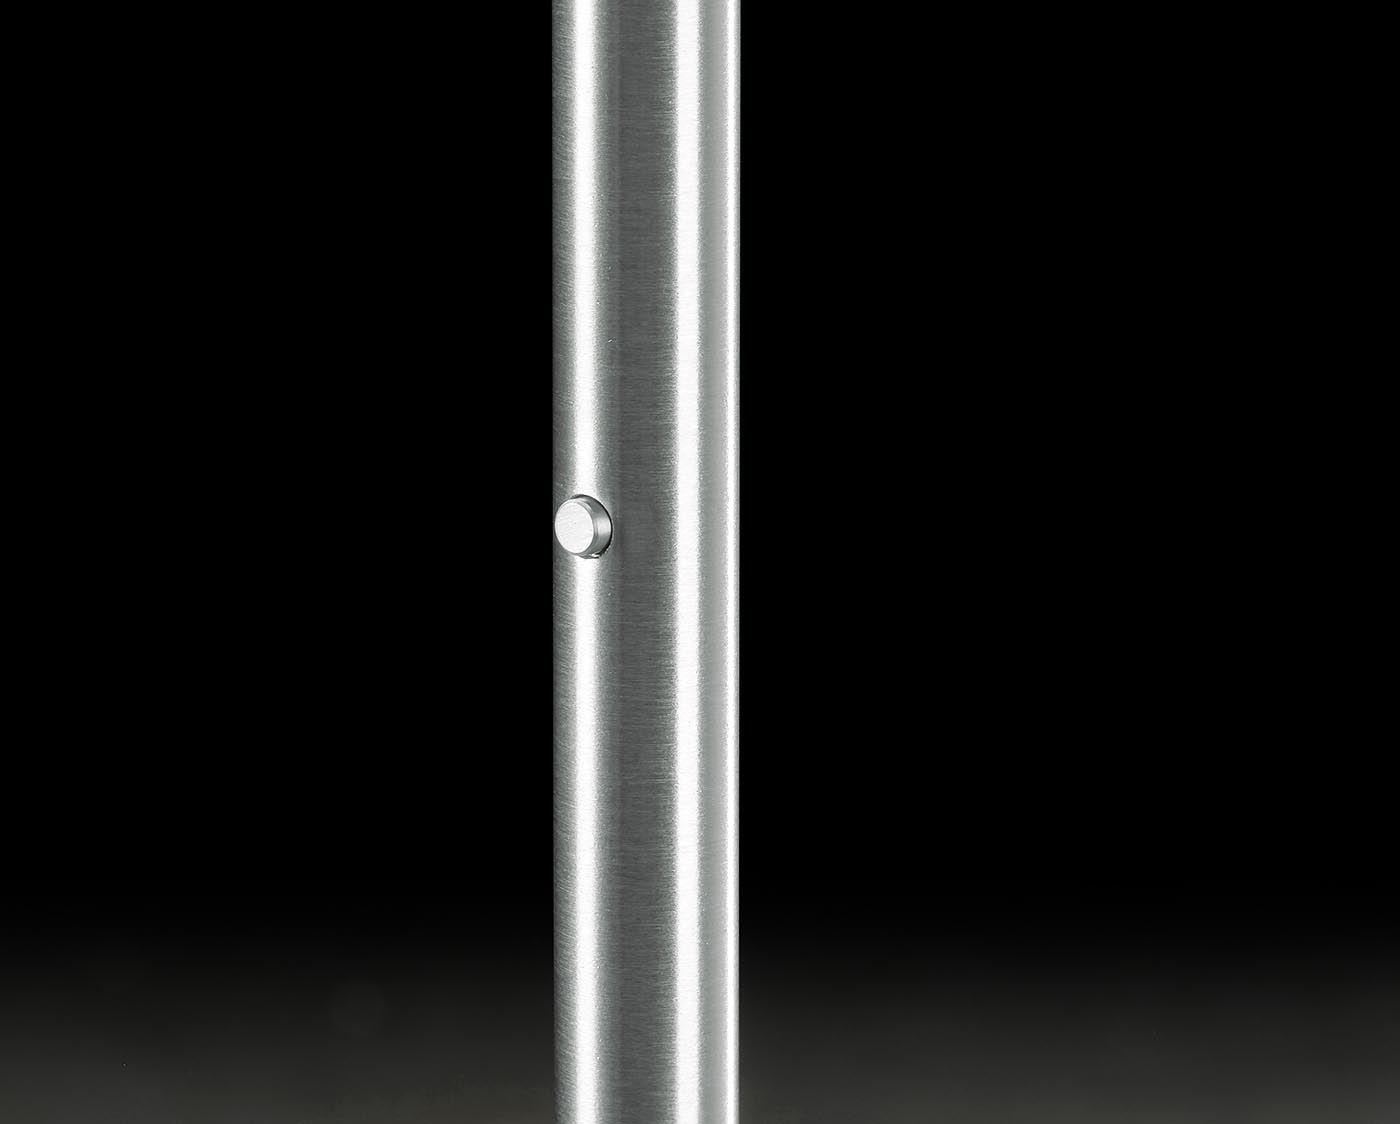 Außergewöhnlich heller Stand-Deckenfluter NAXOS mit verstellbarem Premium-LED, Bild 8